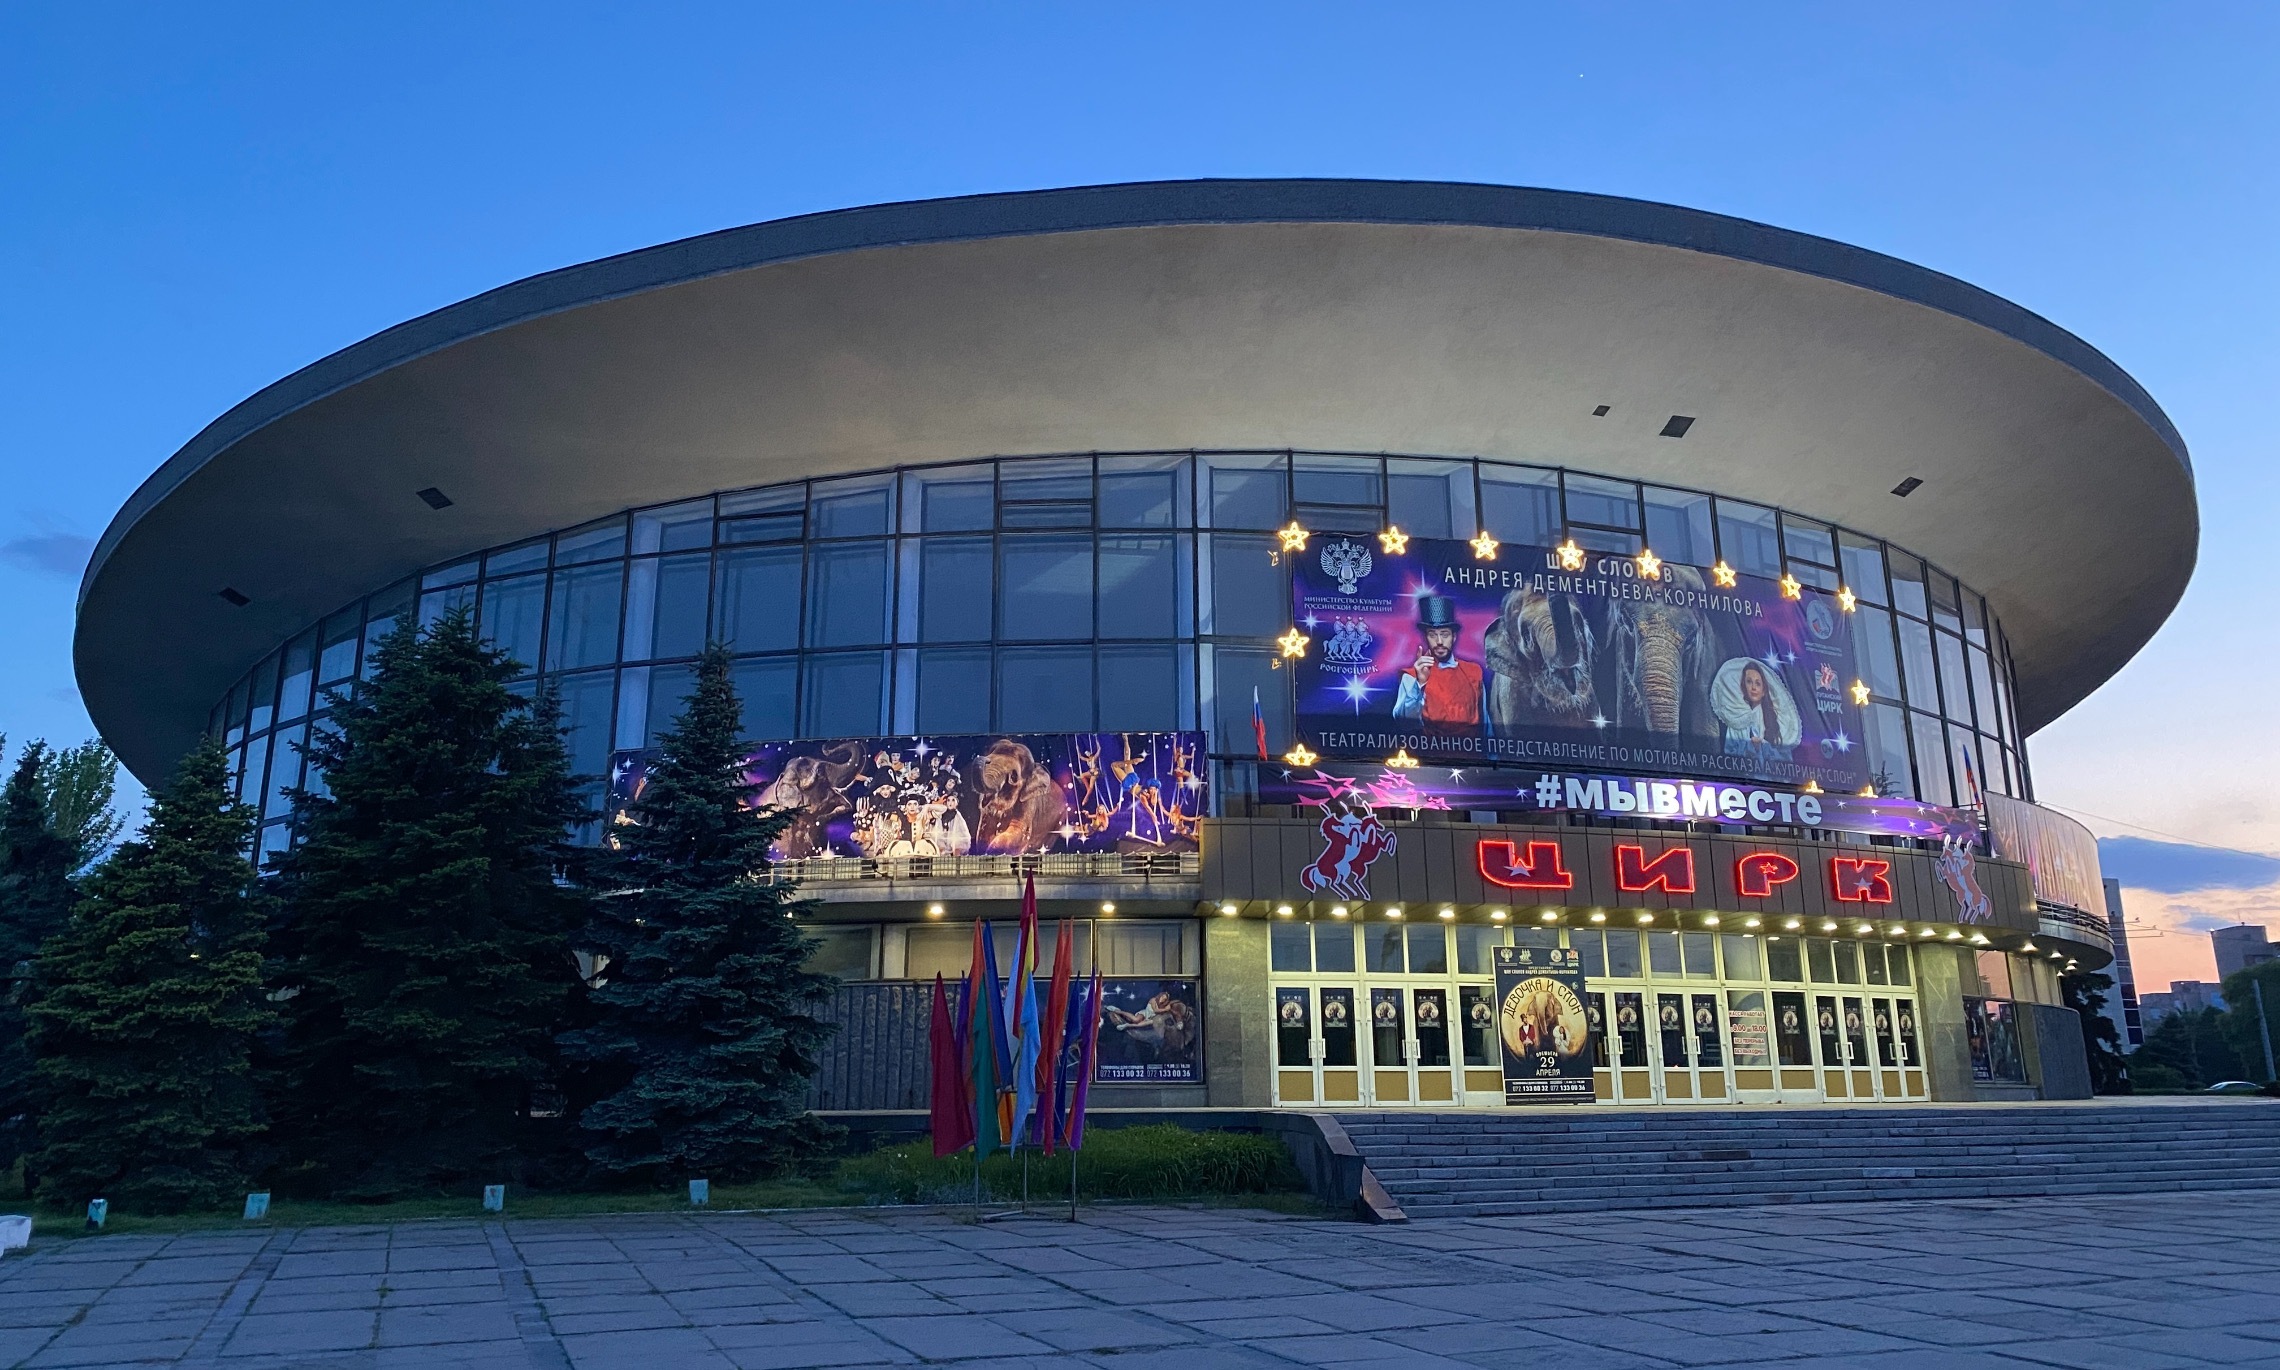 Цирк в Луганске выглядит круто! Говорят там сейчас выступает труппа из Москвы и билеты не купить